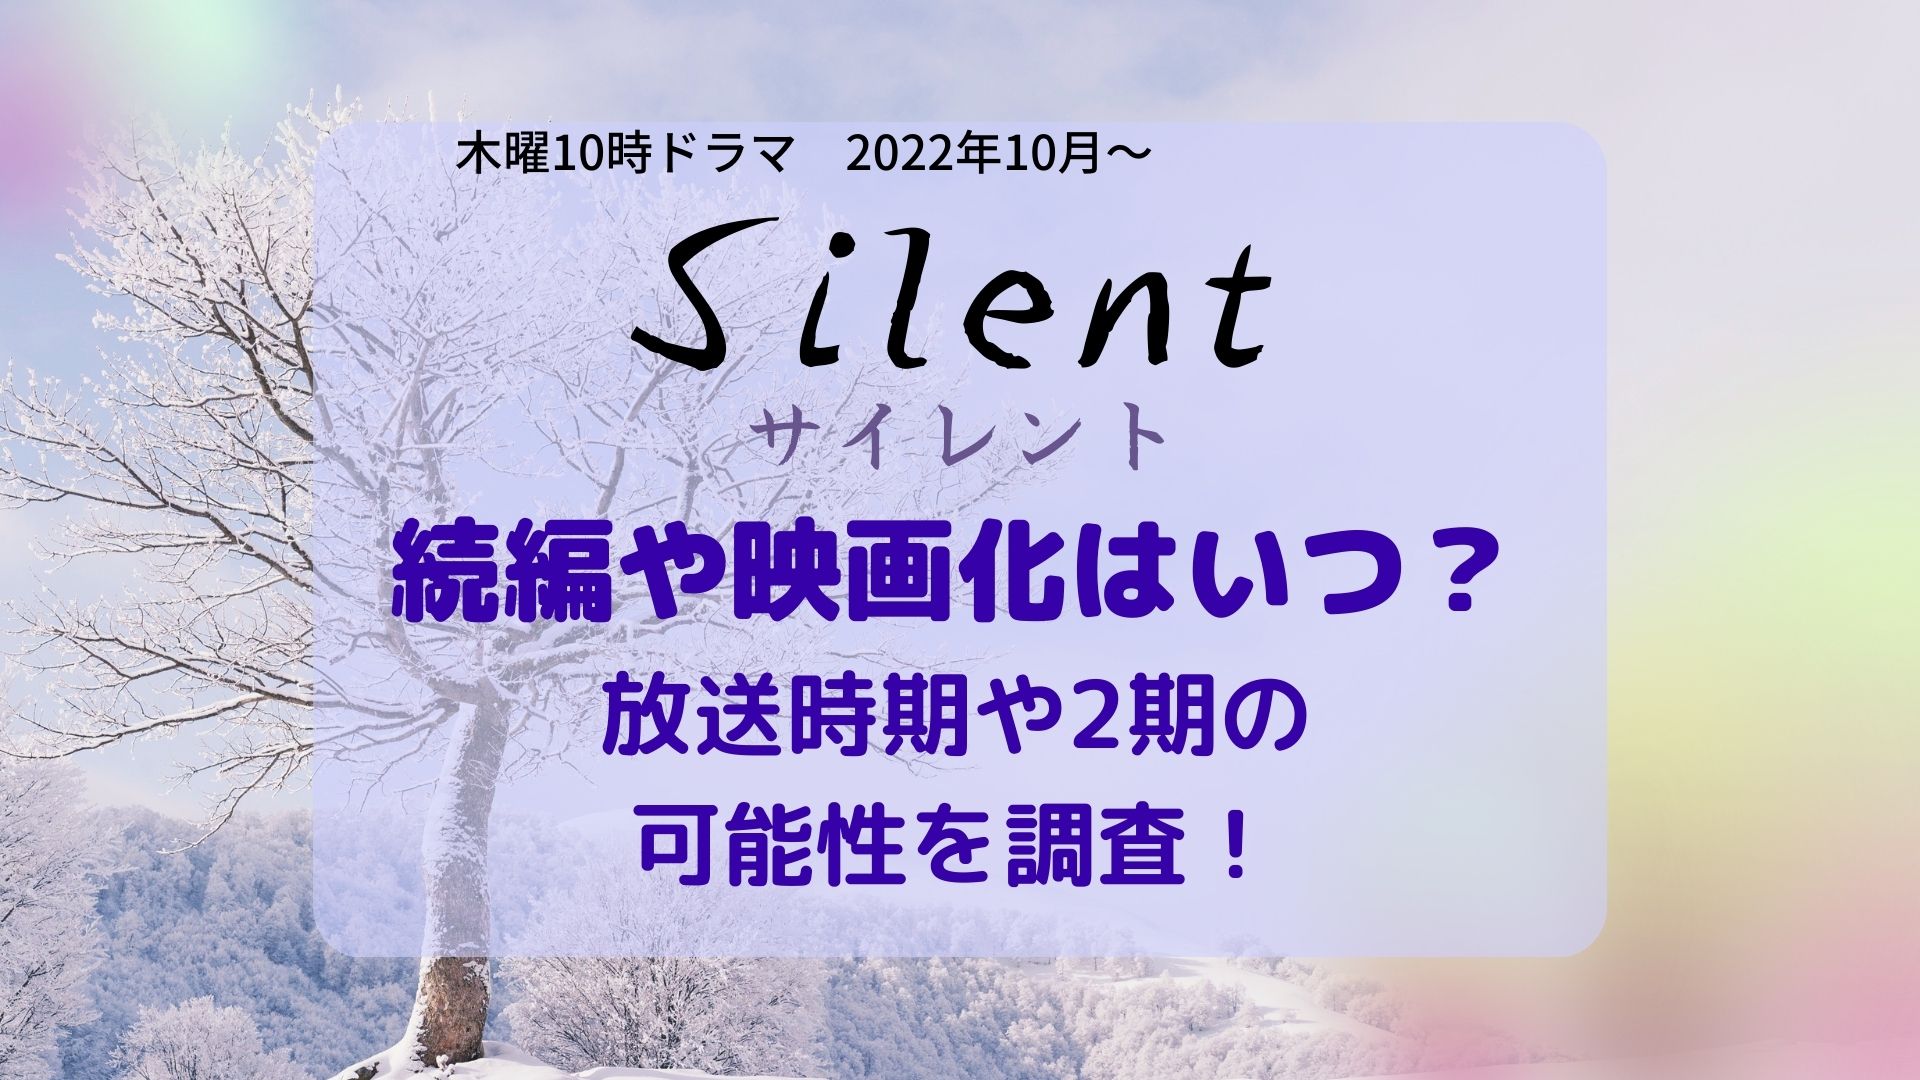 Silent (サイレント)続編・映画化いつ